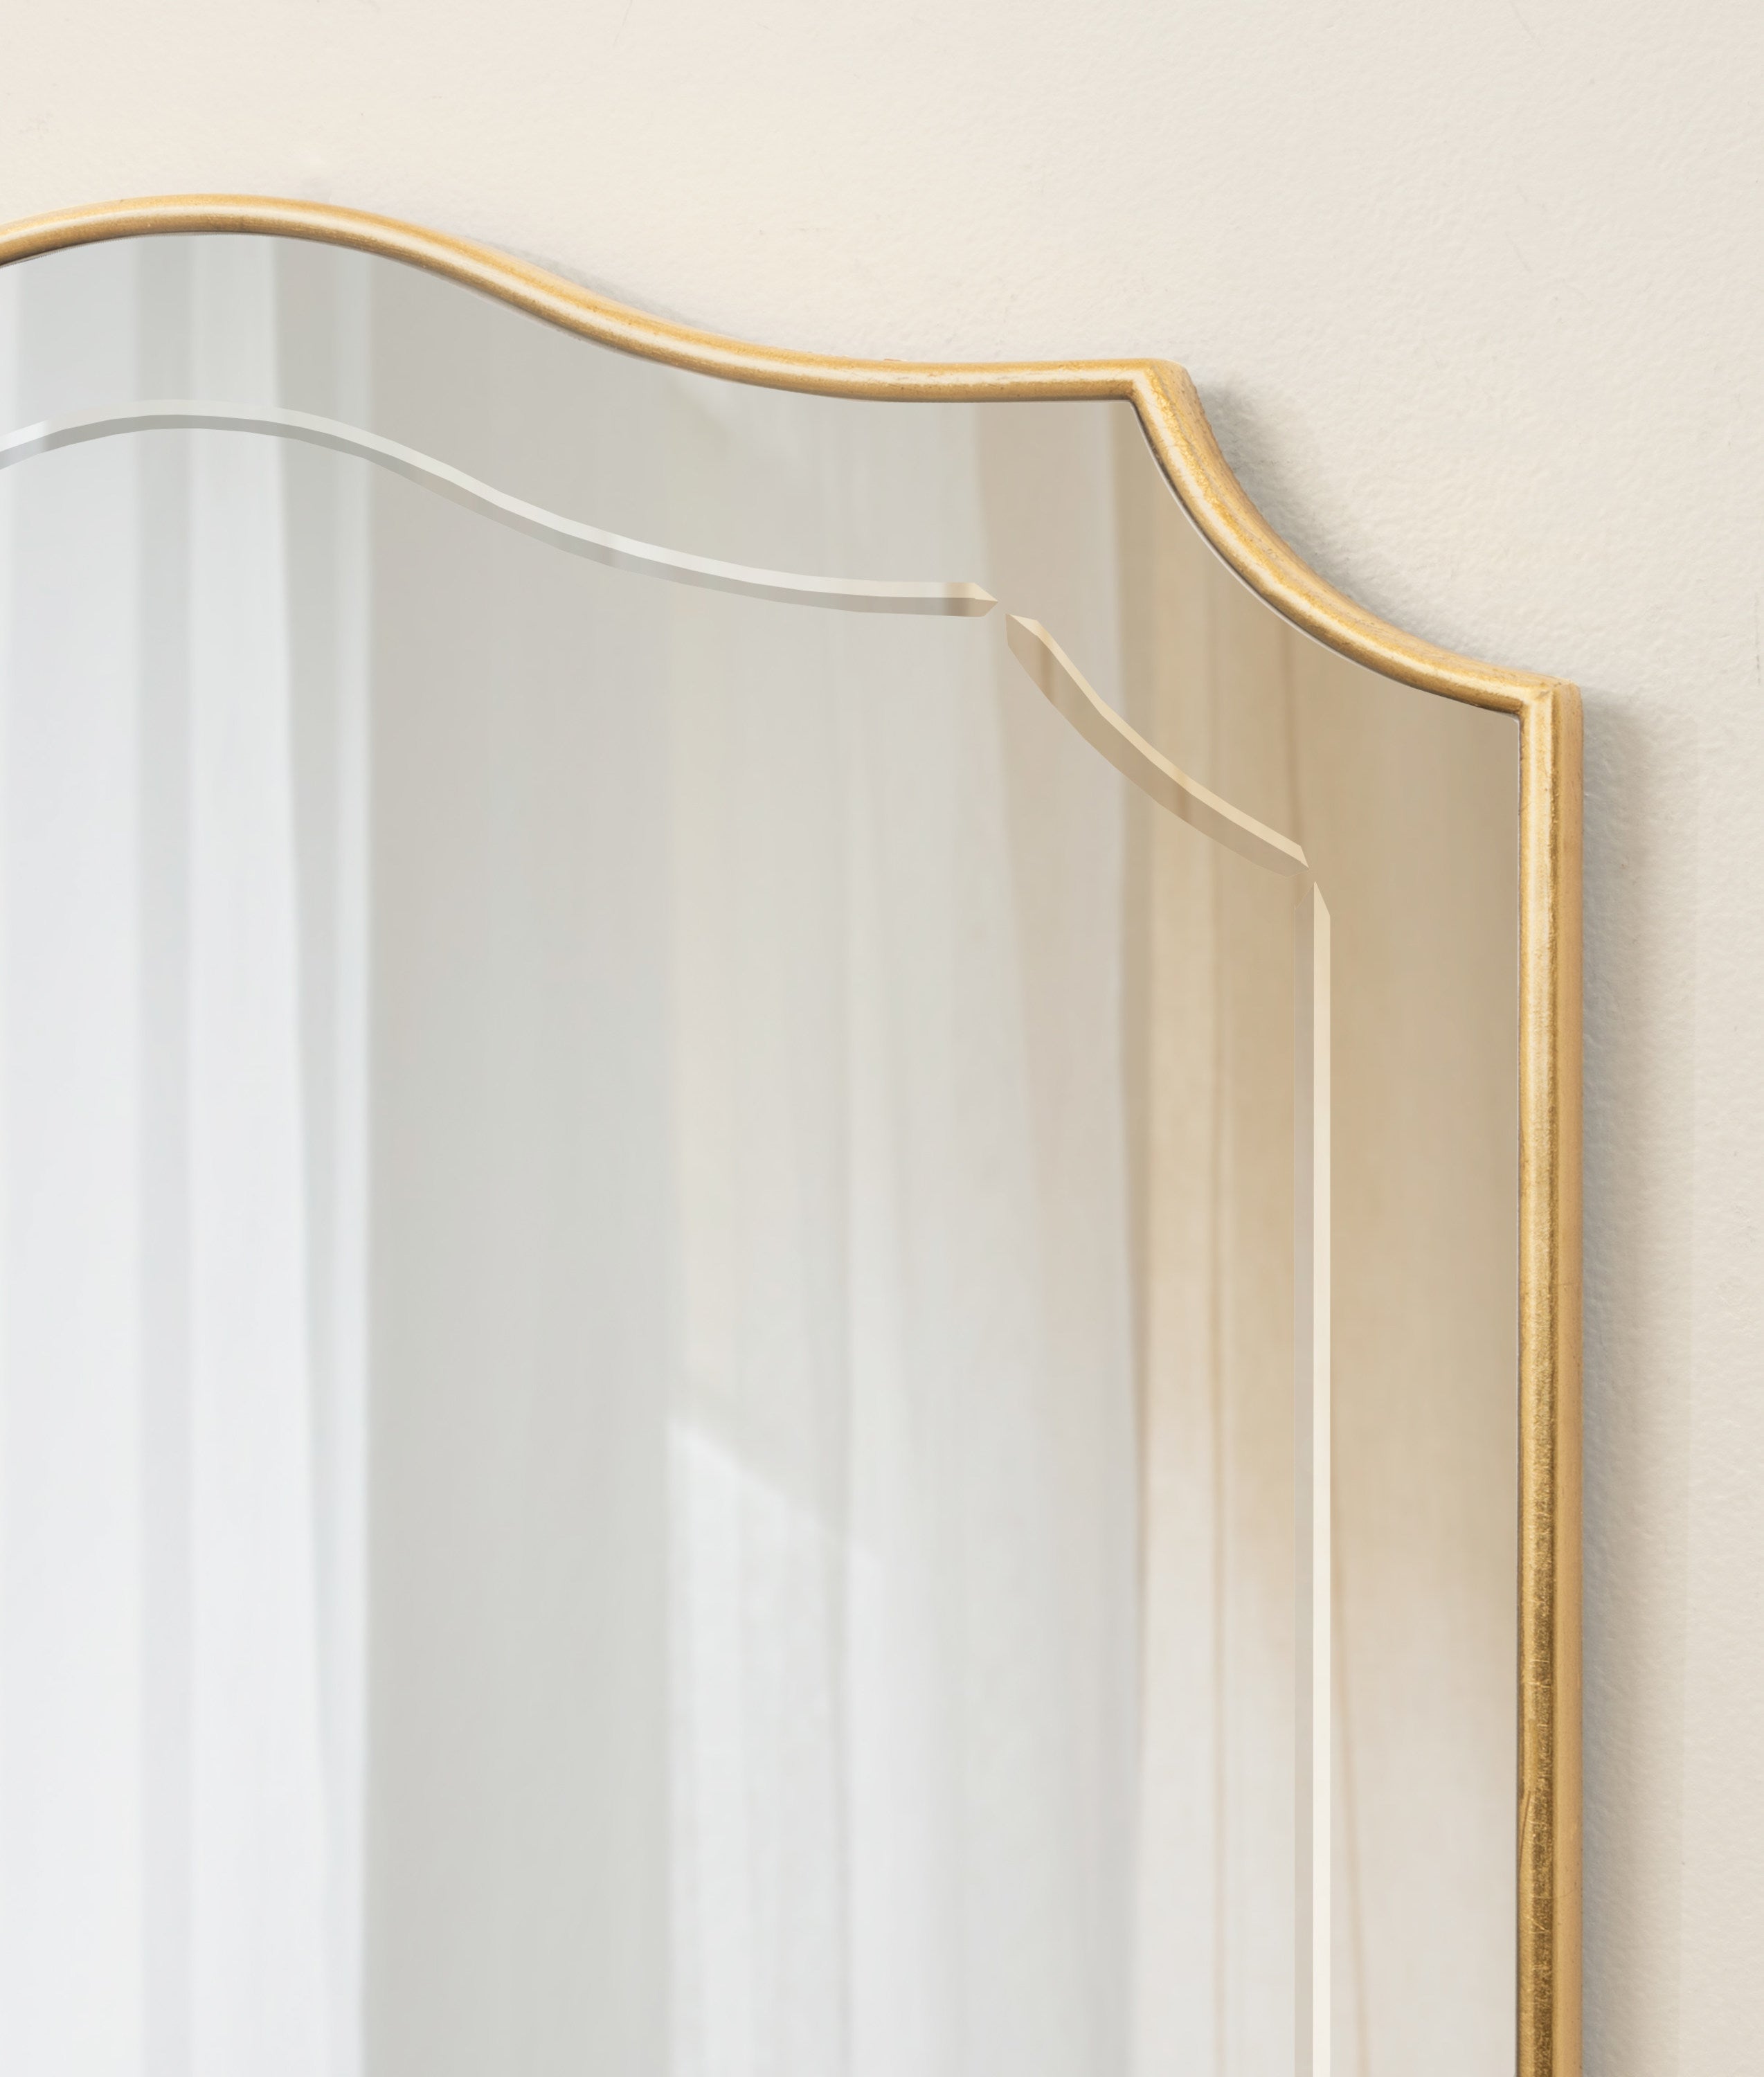 Hollyn Decorative Framed Wall Mirror